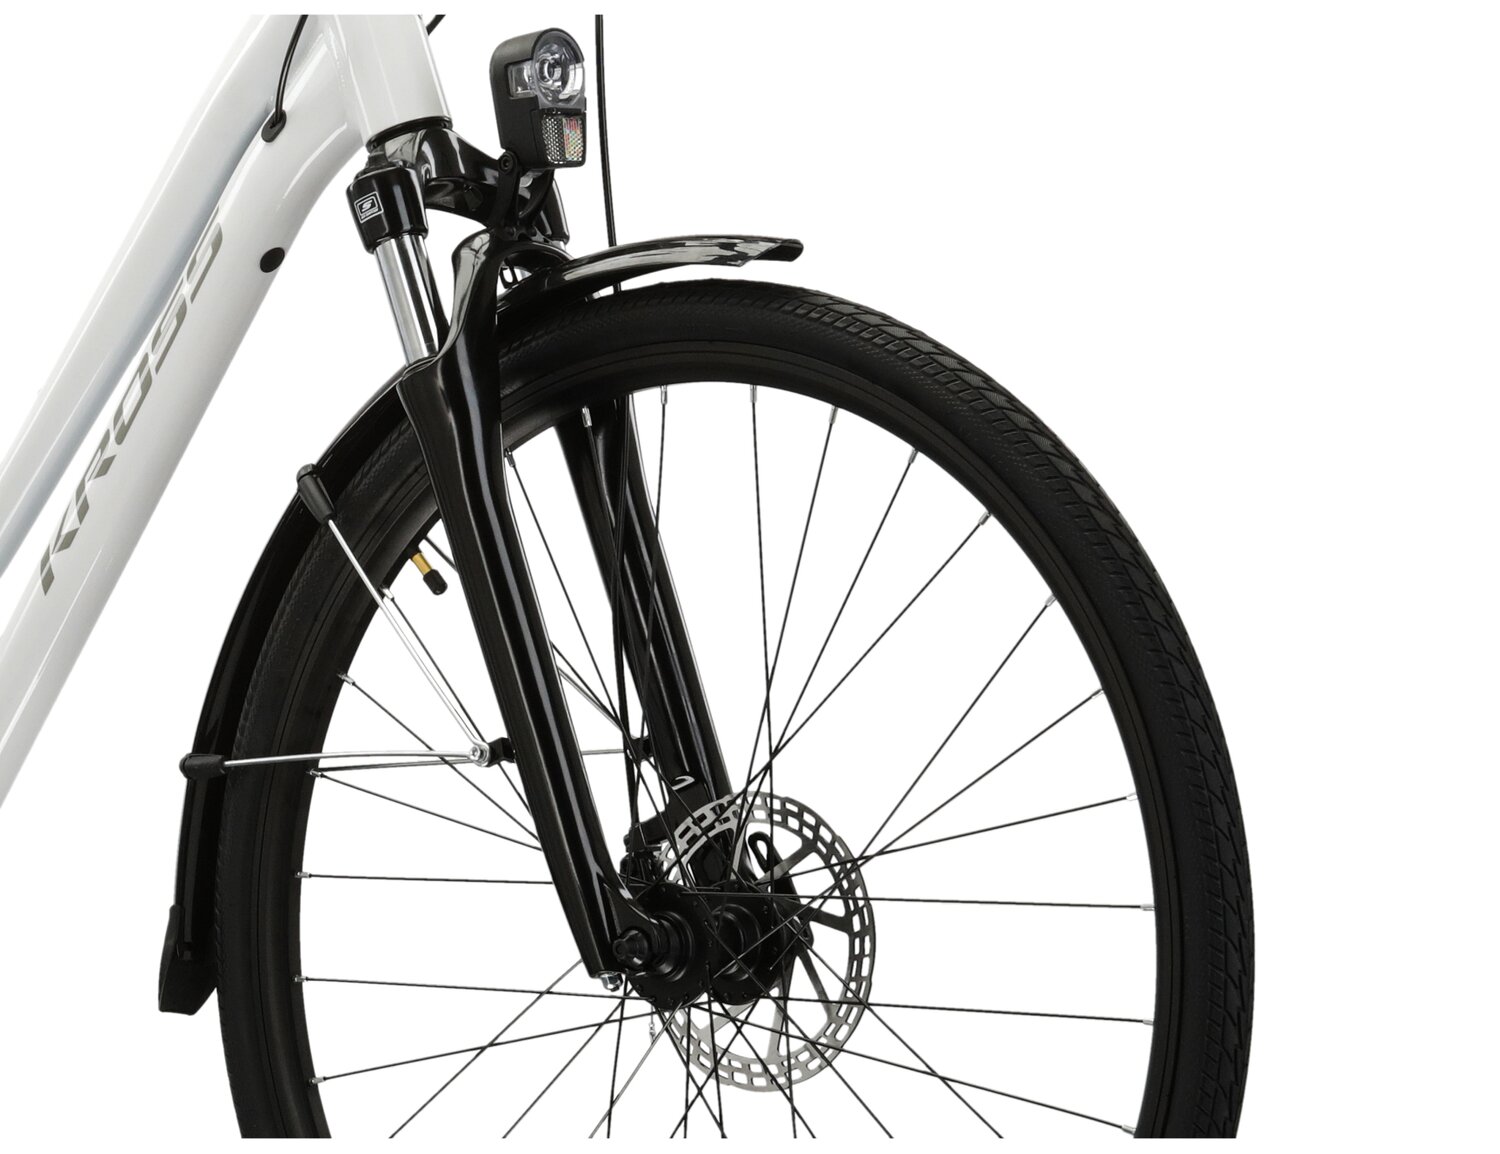 Aluminowa rama, amortyzowany widelec SR SUNTOUR NEX oraz opony Wanda w rowerze trekkingowym damskim KROSS Trans 3.0 